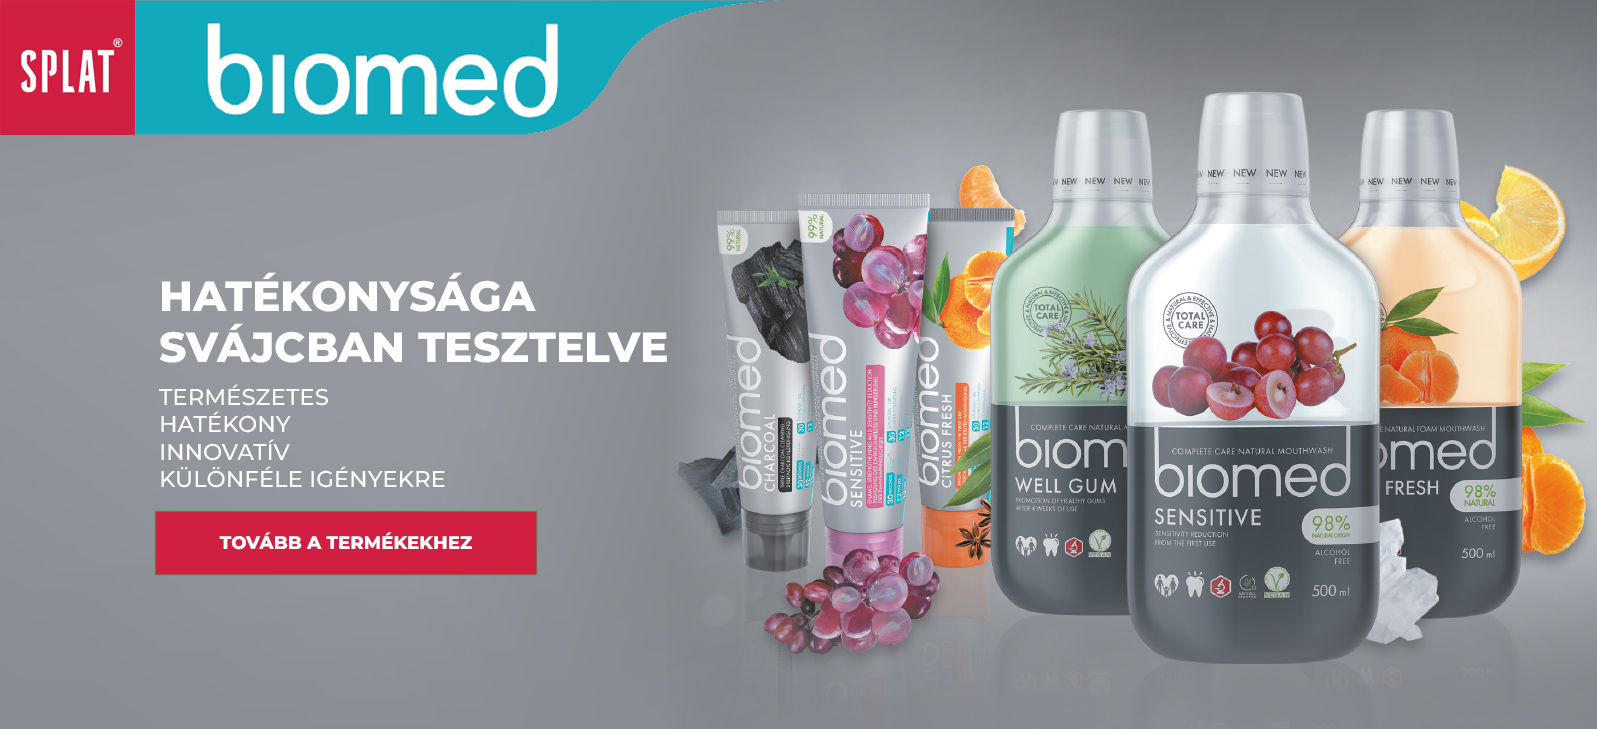 SPLAT Biomed termékek